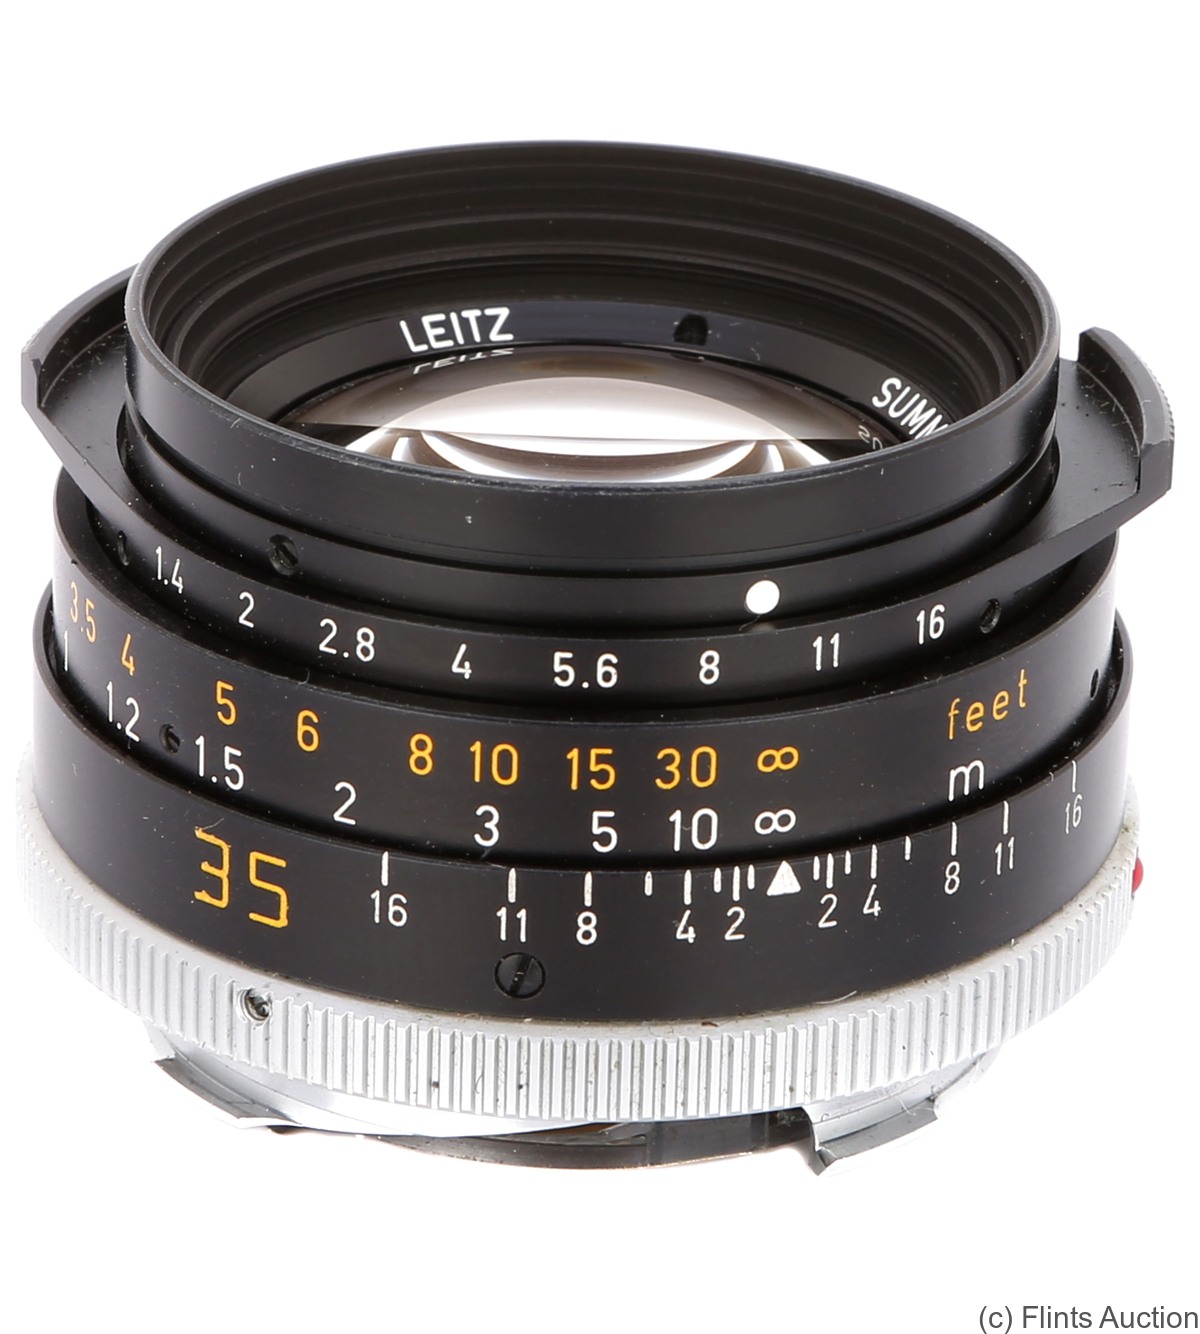 Leitz: 35mm (3.5cm) f1.4 Summilux-M (BM, black, late) camera